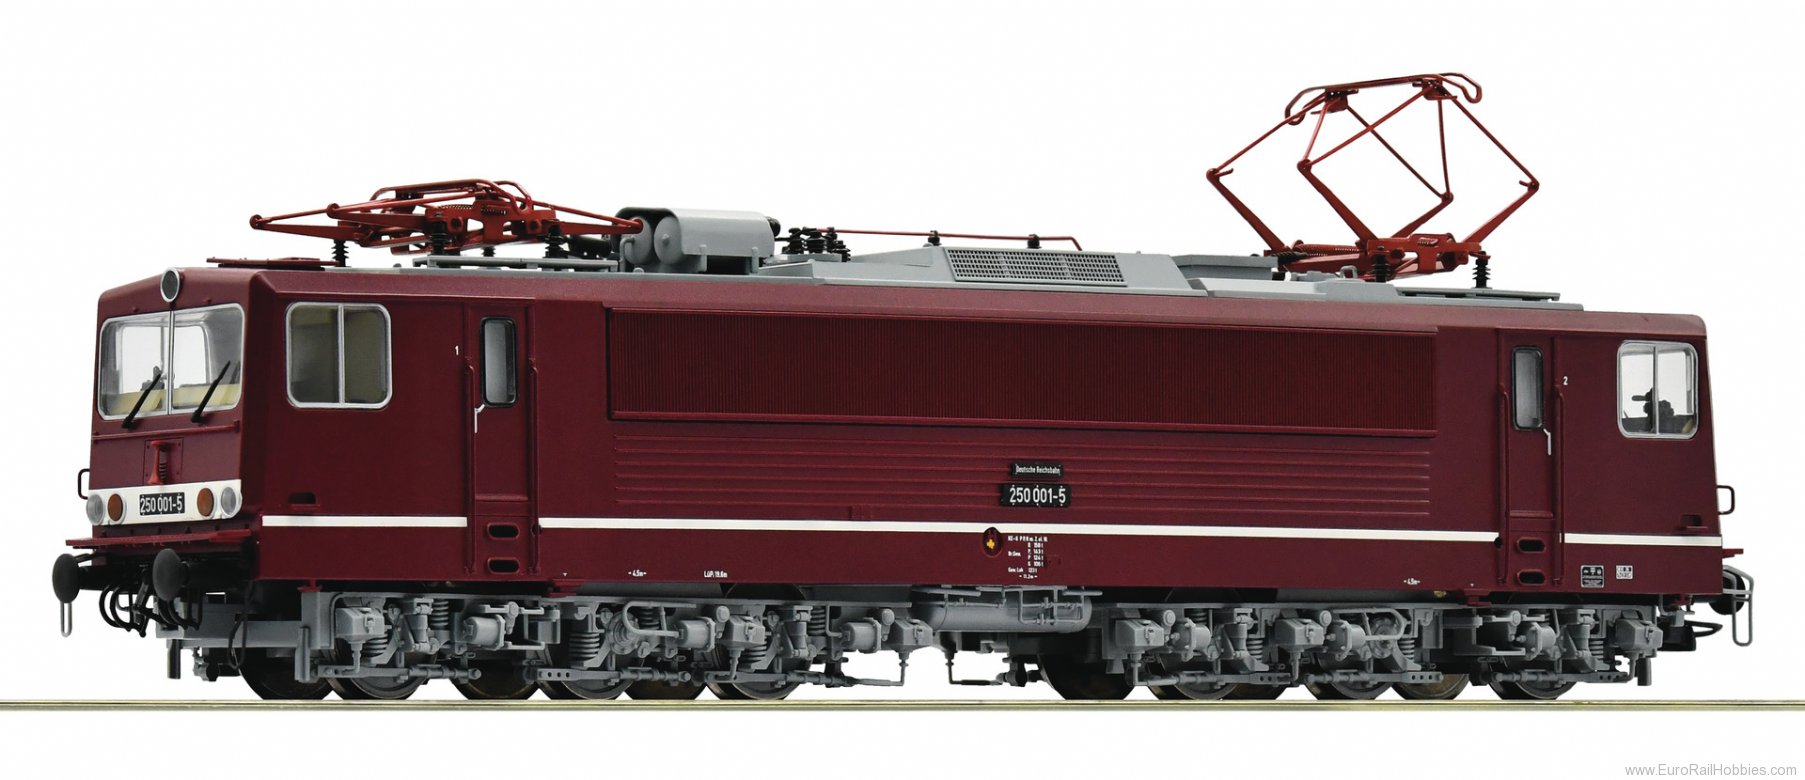 Roco 79315 DR Electric locomotive 250 001-5, (Marklin AC